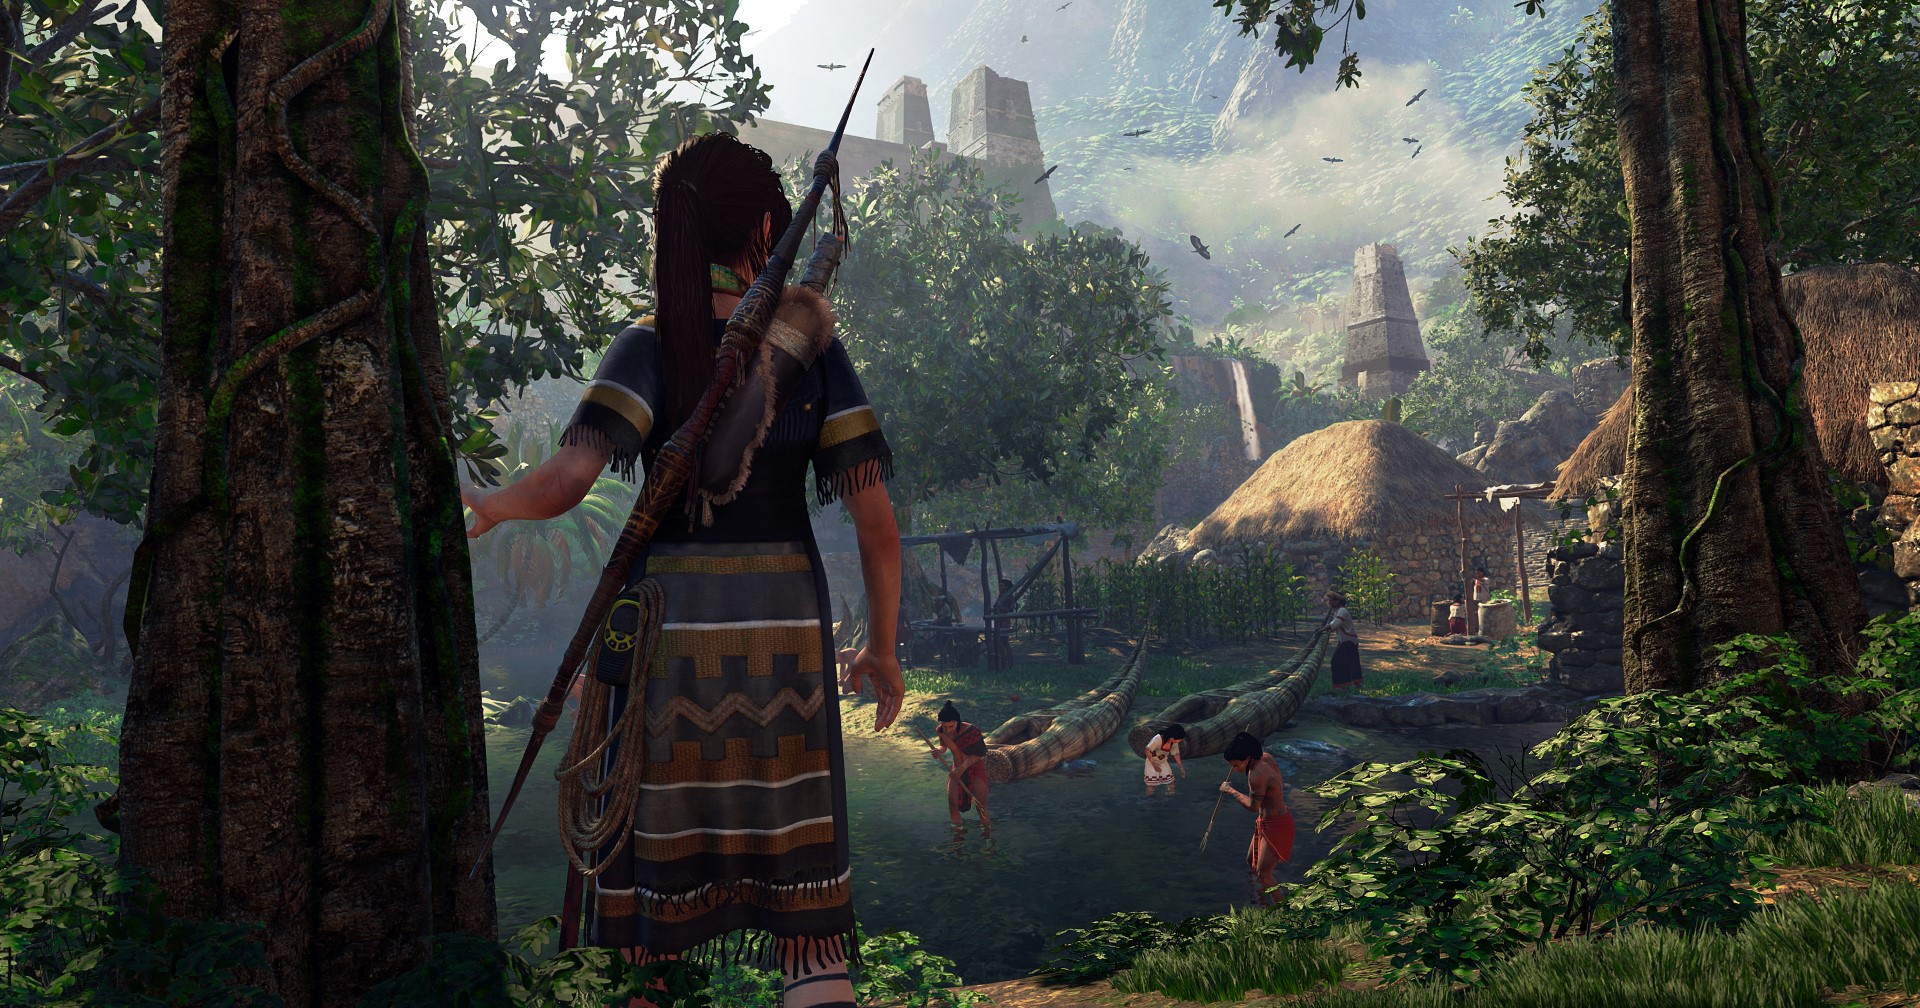 หลุดข้อมูล Tomb Raider ภาคใหม่ ที่เผยว่า Lara Croft จะกลับมาพร้อมกับทีมนักผจญภัย